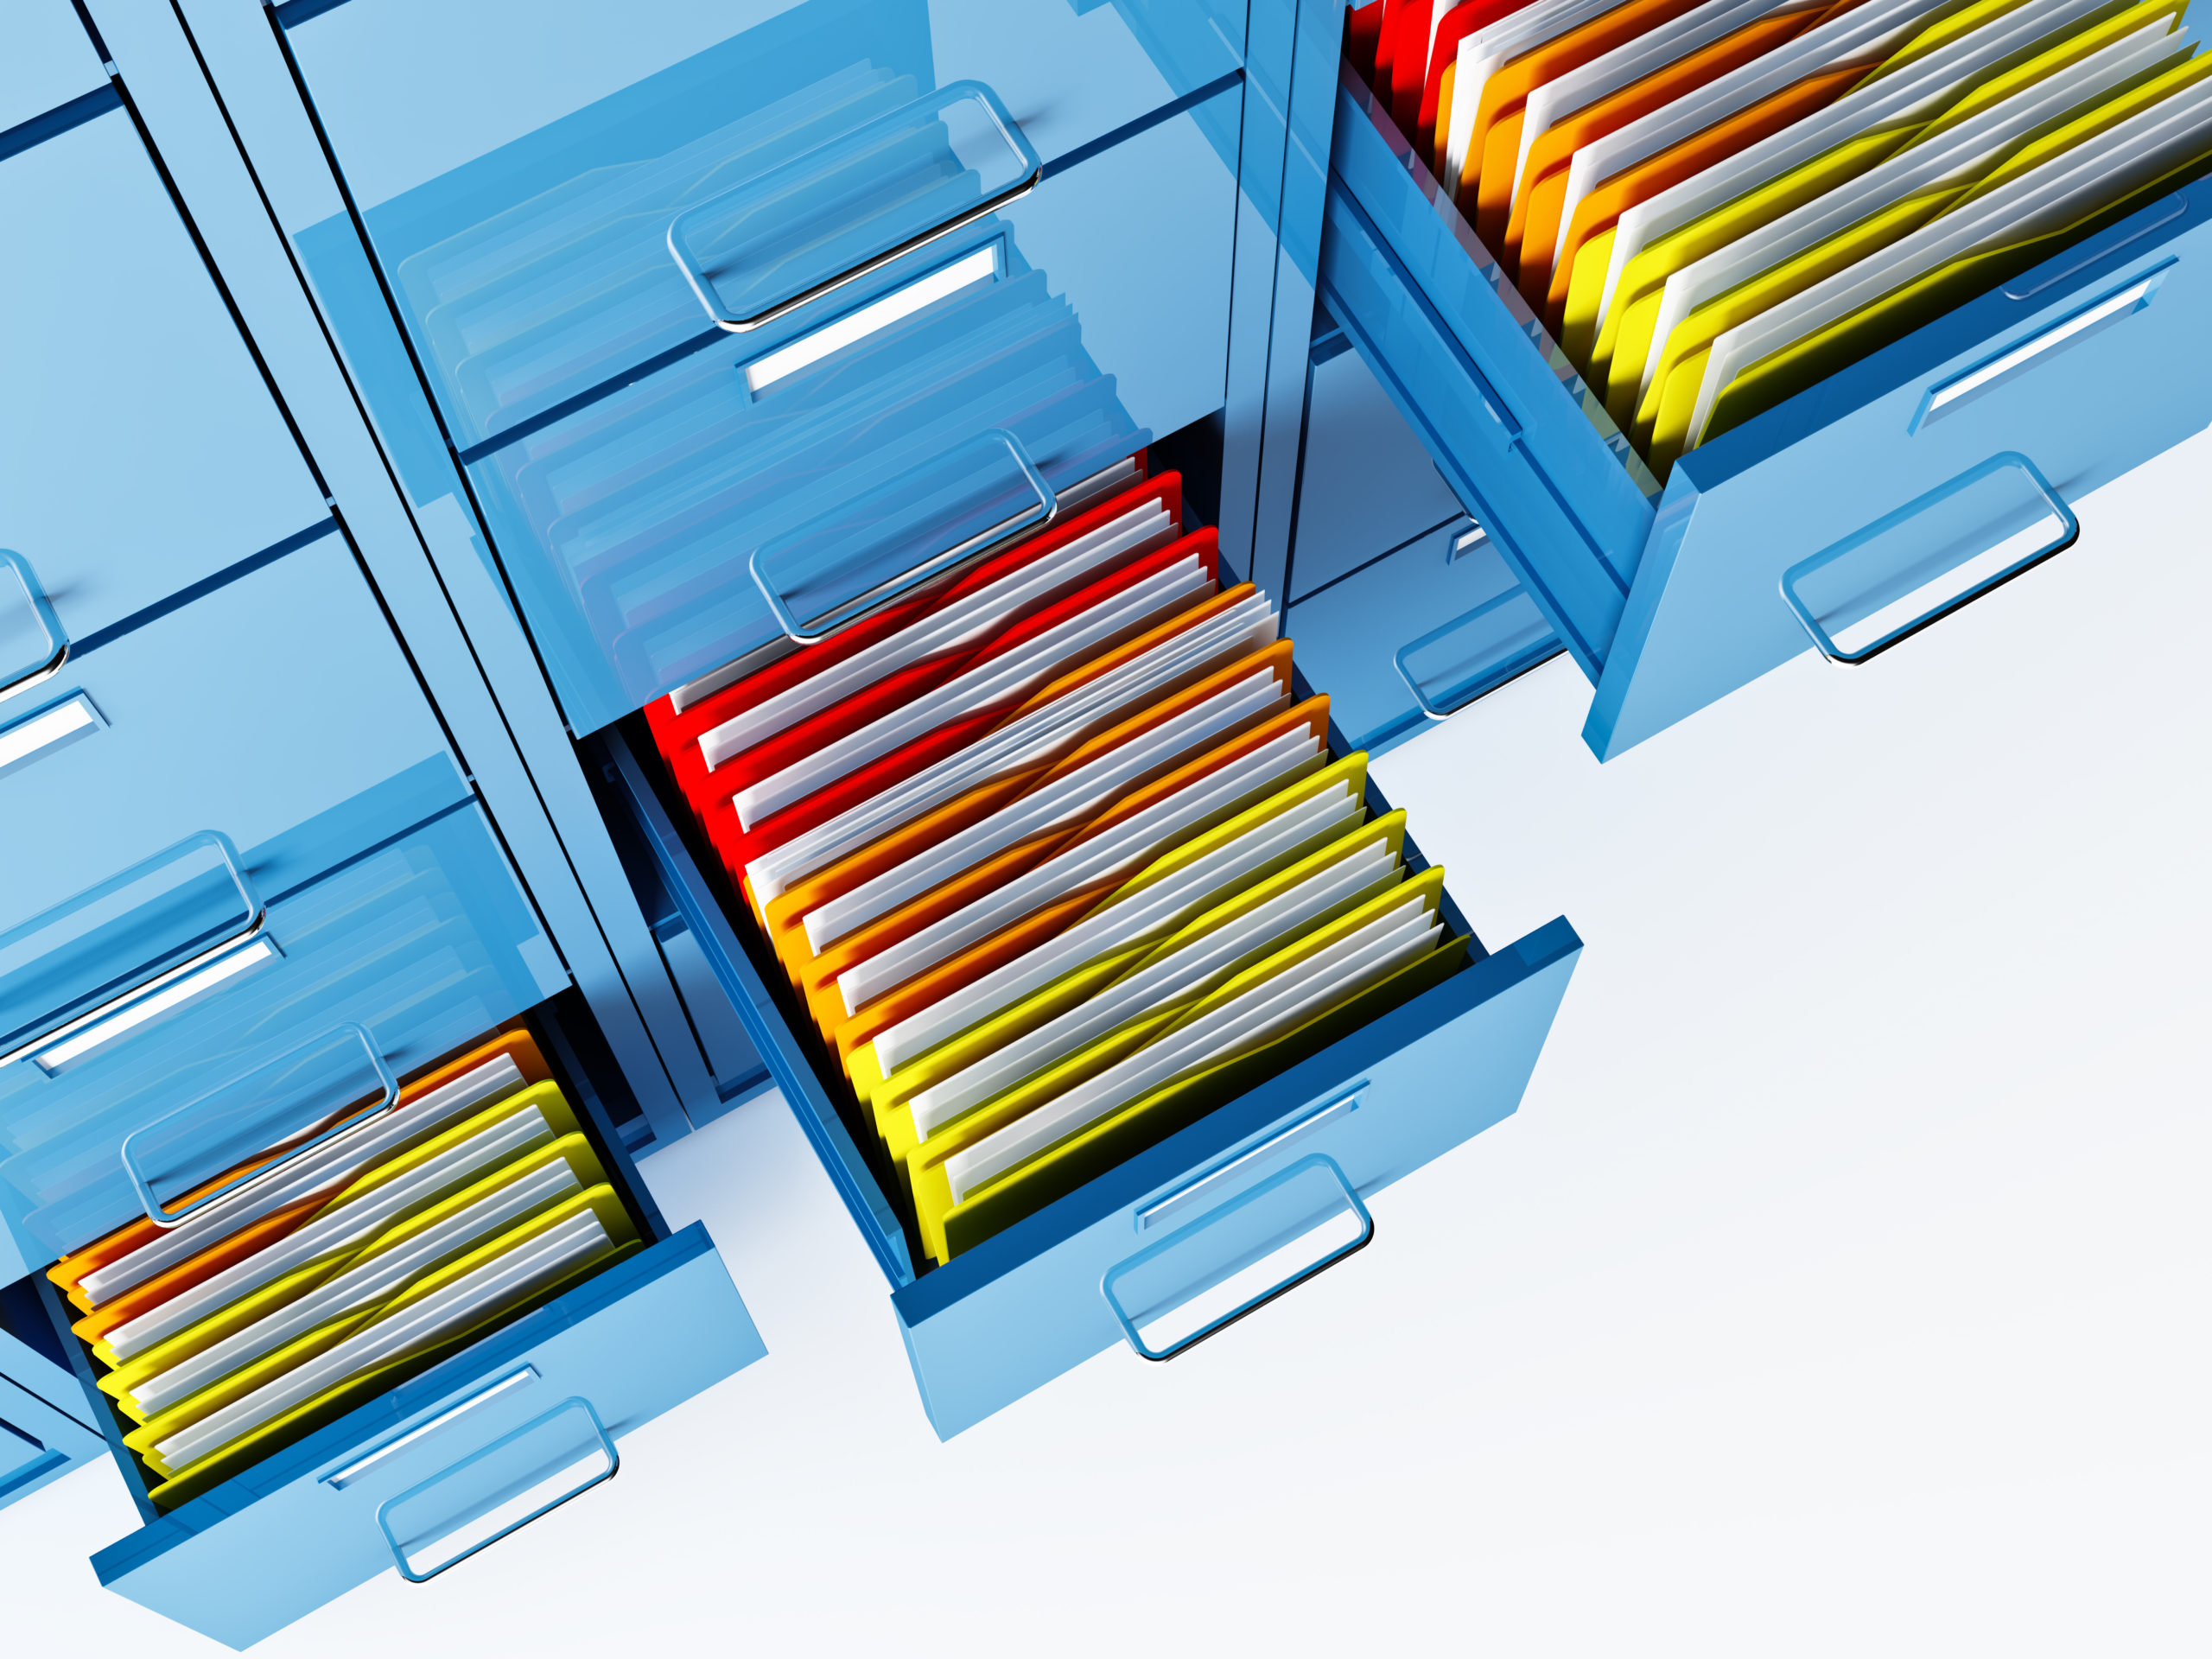 fine 3d image of file cabinet folder